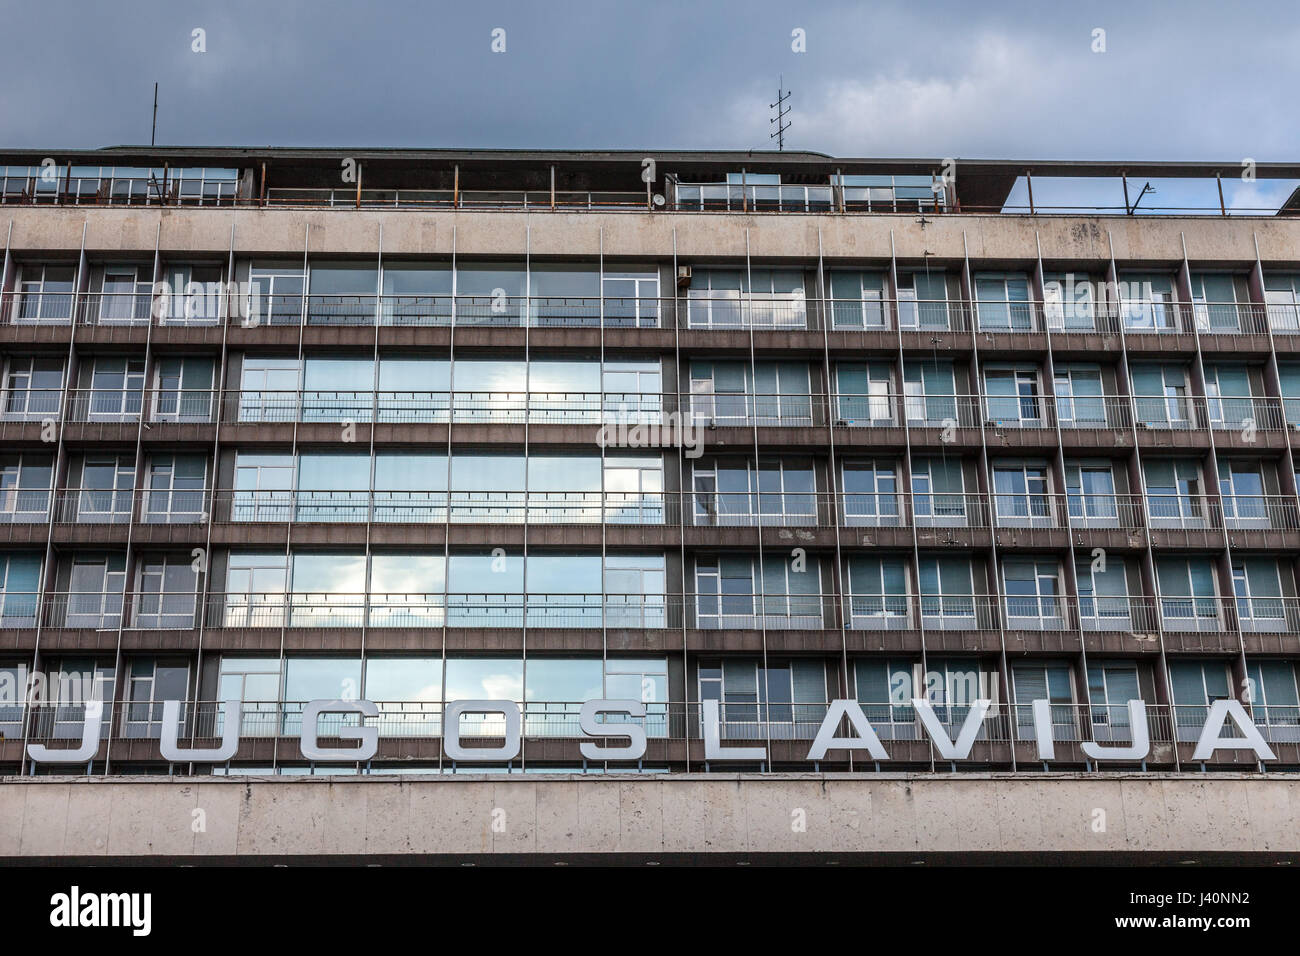 Bild einer kommunistischen Ära Gebäude mit dem Wort Jugoslawien (Jugoslawien) davor in Belgrad, Hauptstadt Stadt Serbiens und ehemaligen k geschrieben Stockfoto